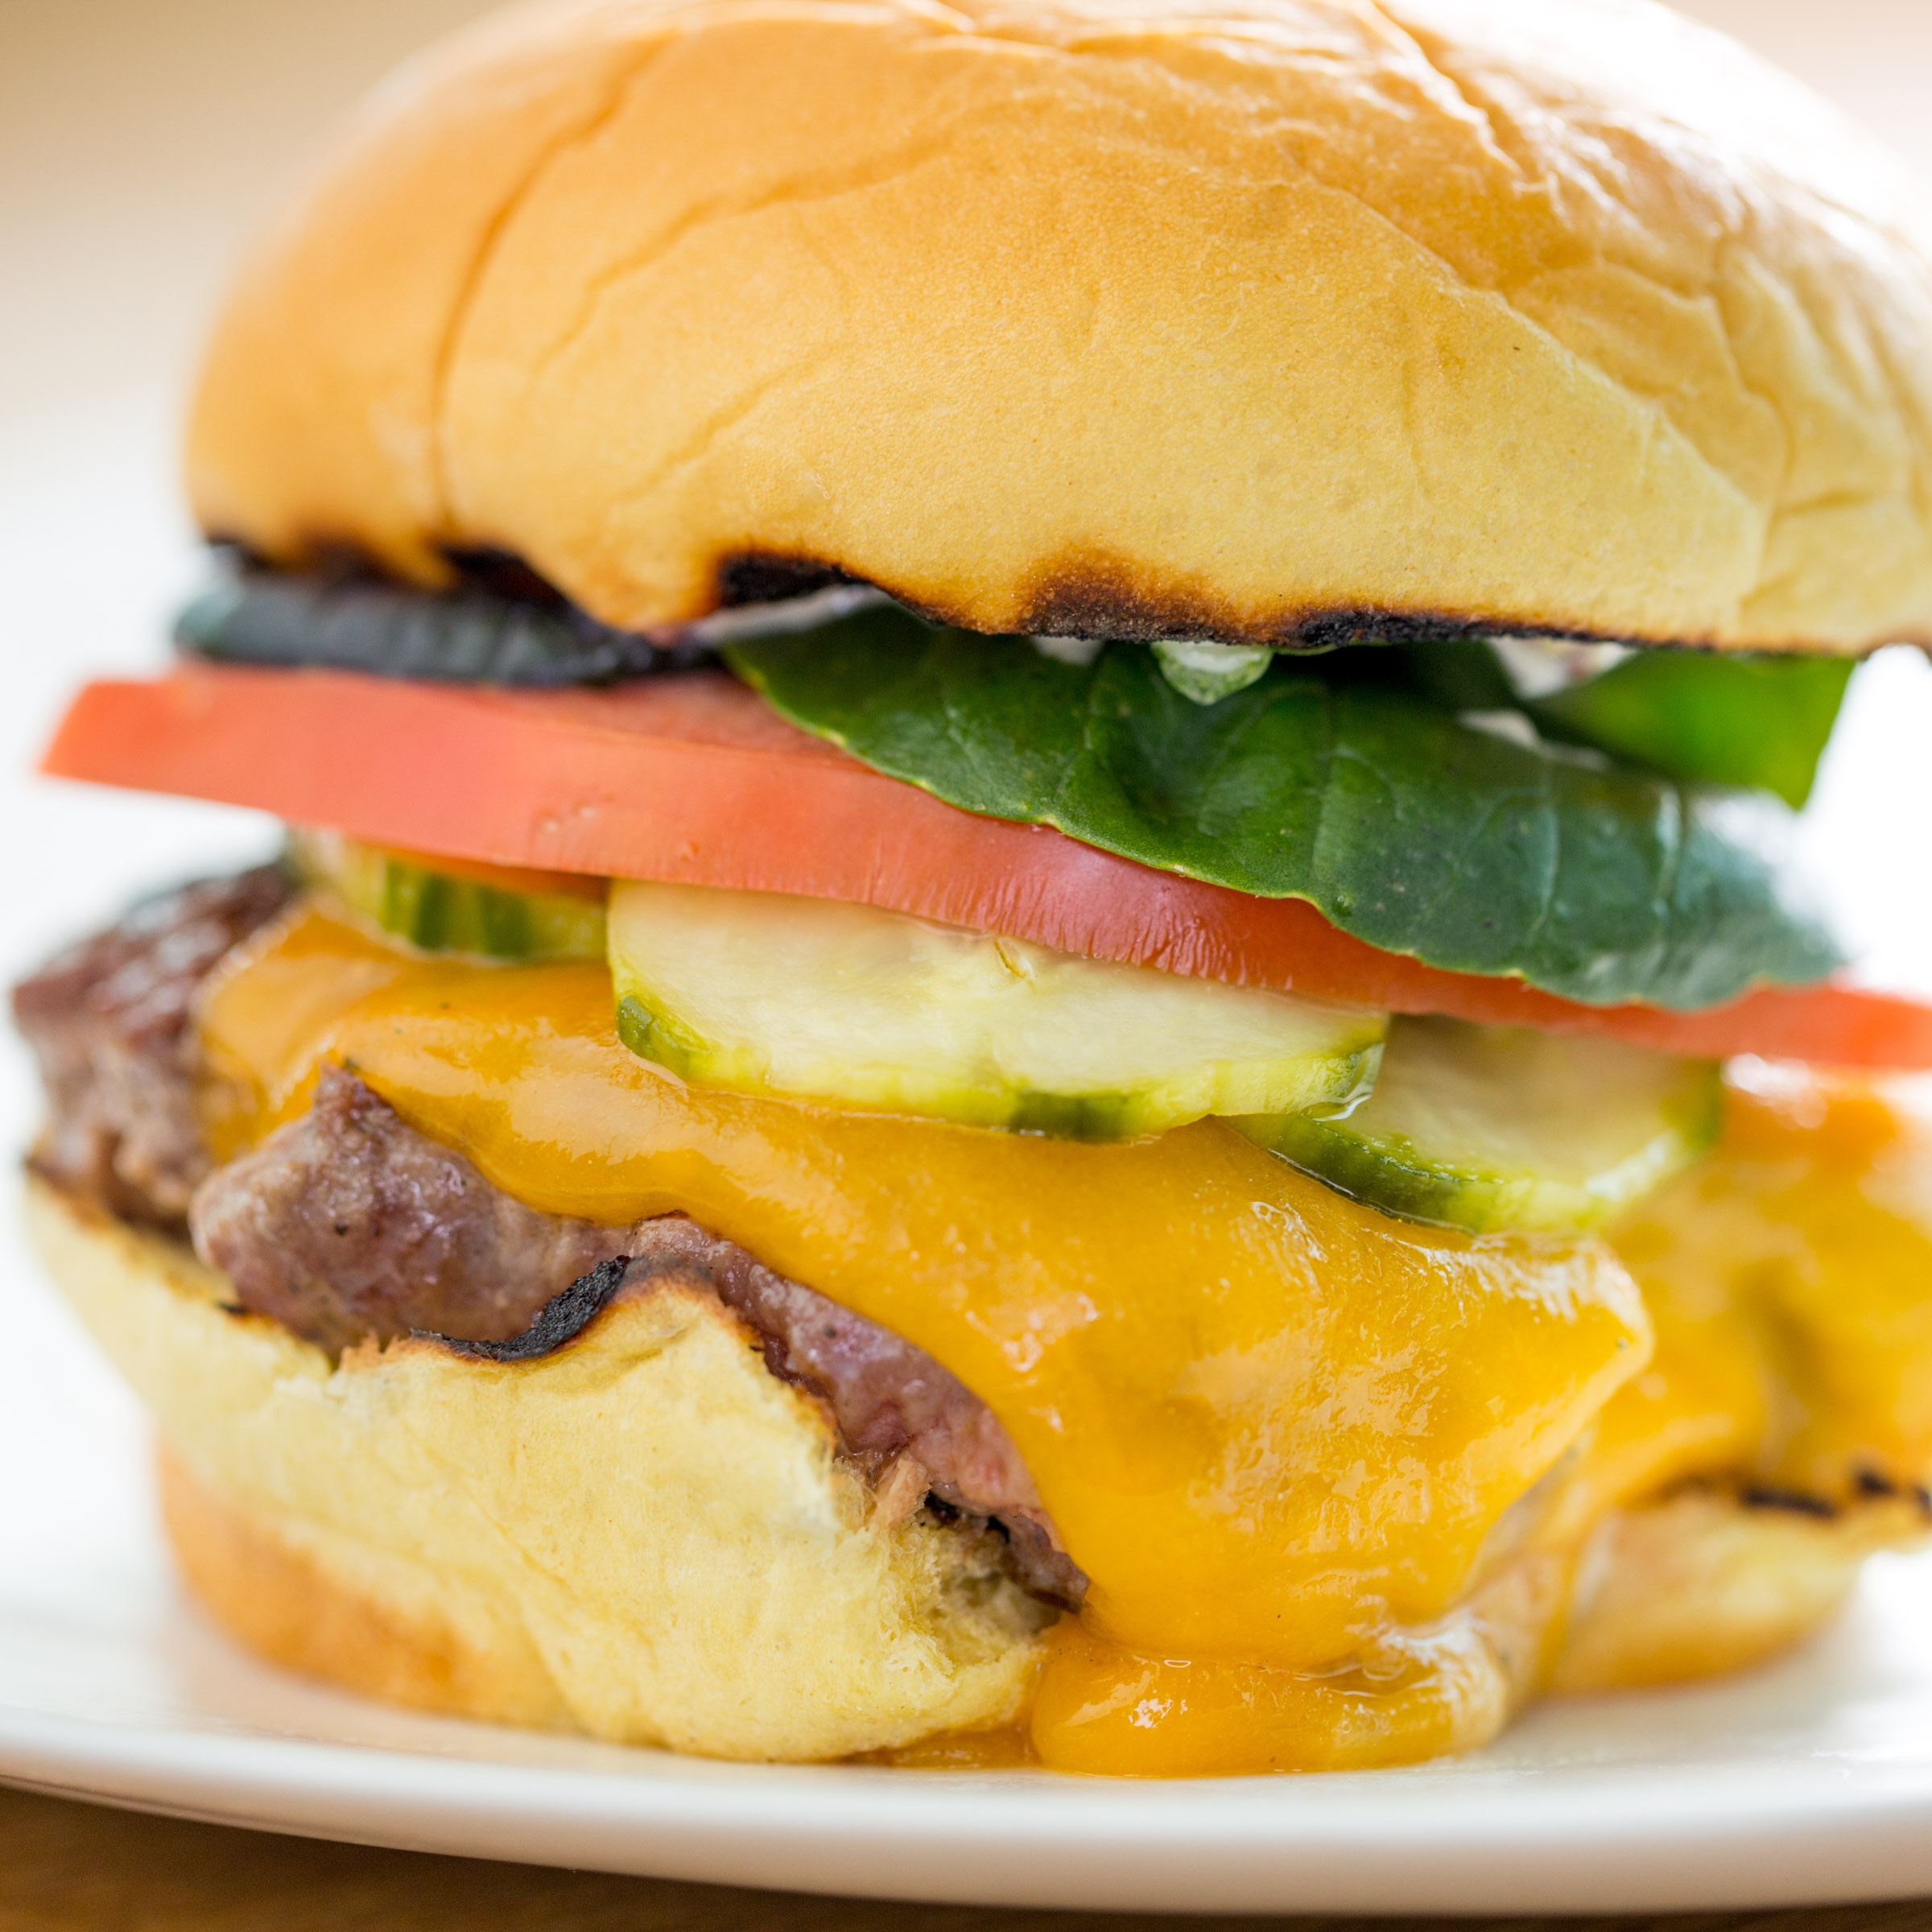 A closeup photograph of a melty cheeseburger